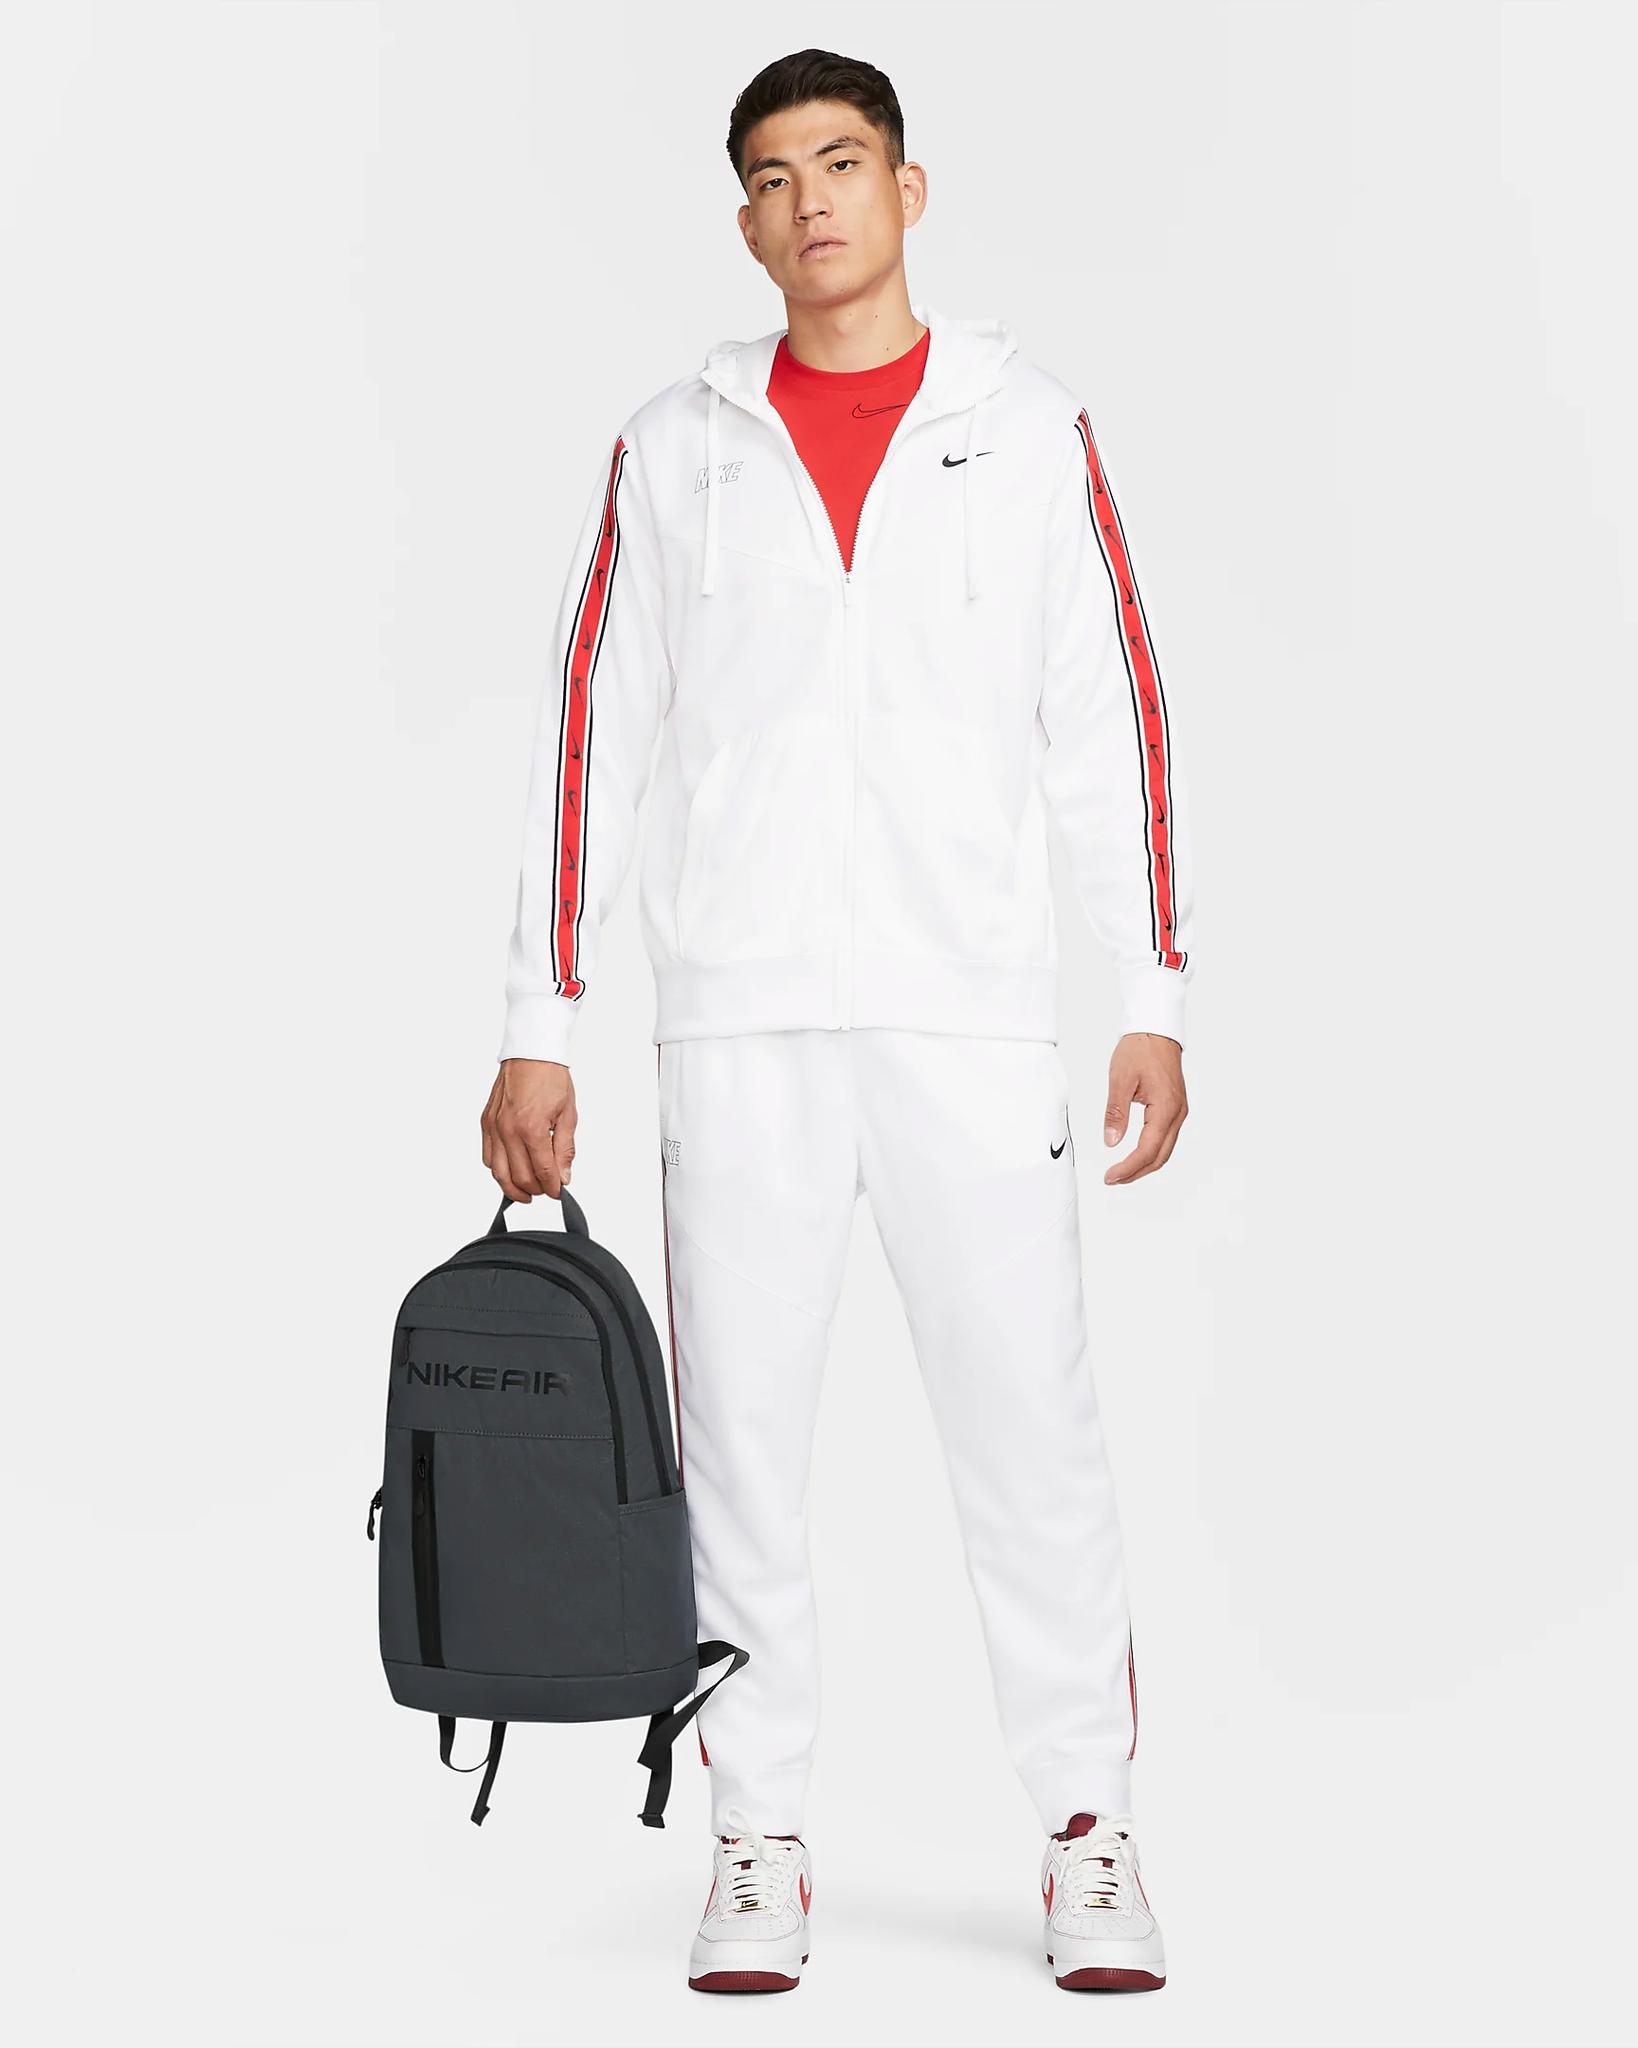 PHỤ KIỆN CHÍNH HÃNG - Balo Nike Premium Backpack (21L) - DQ5763-070